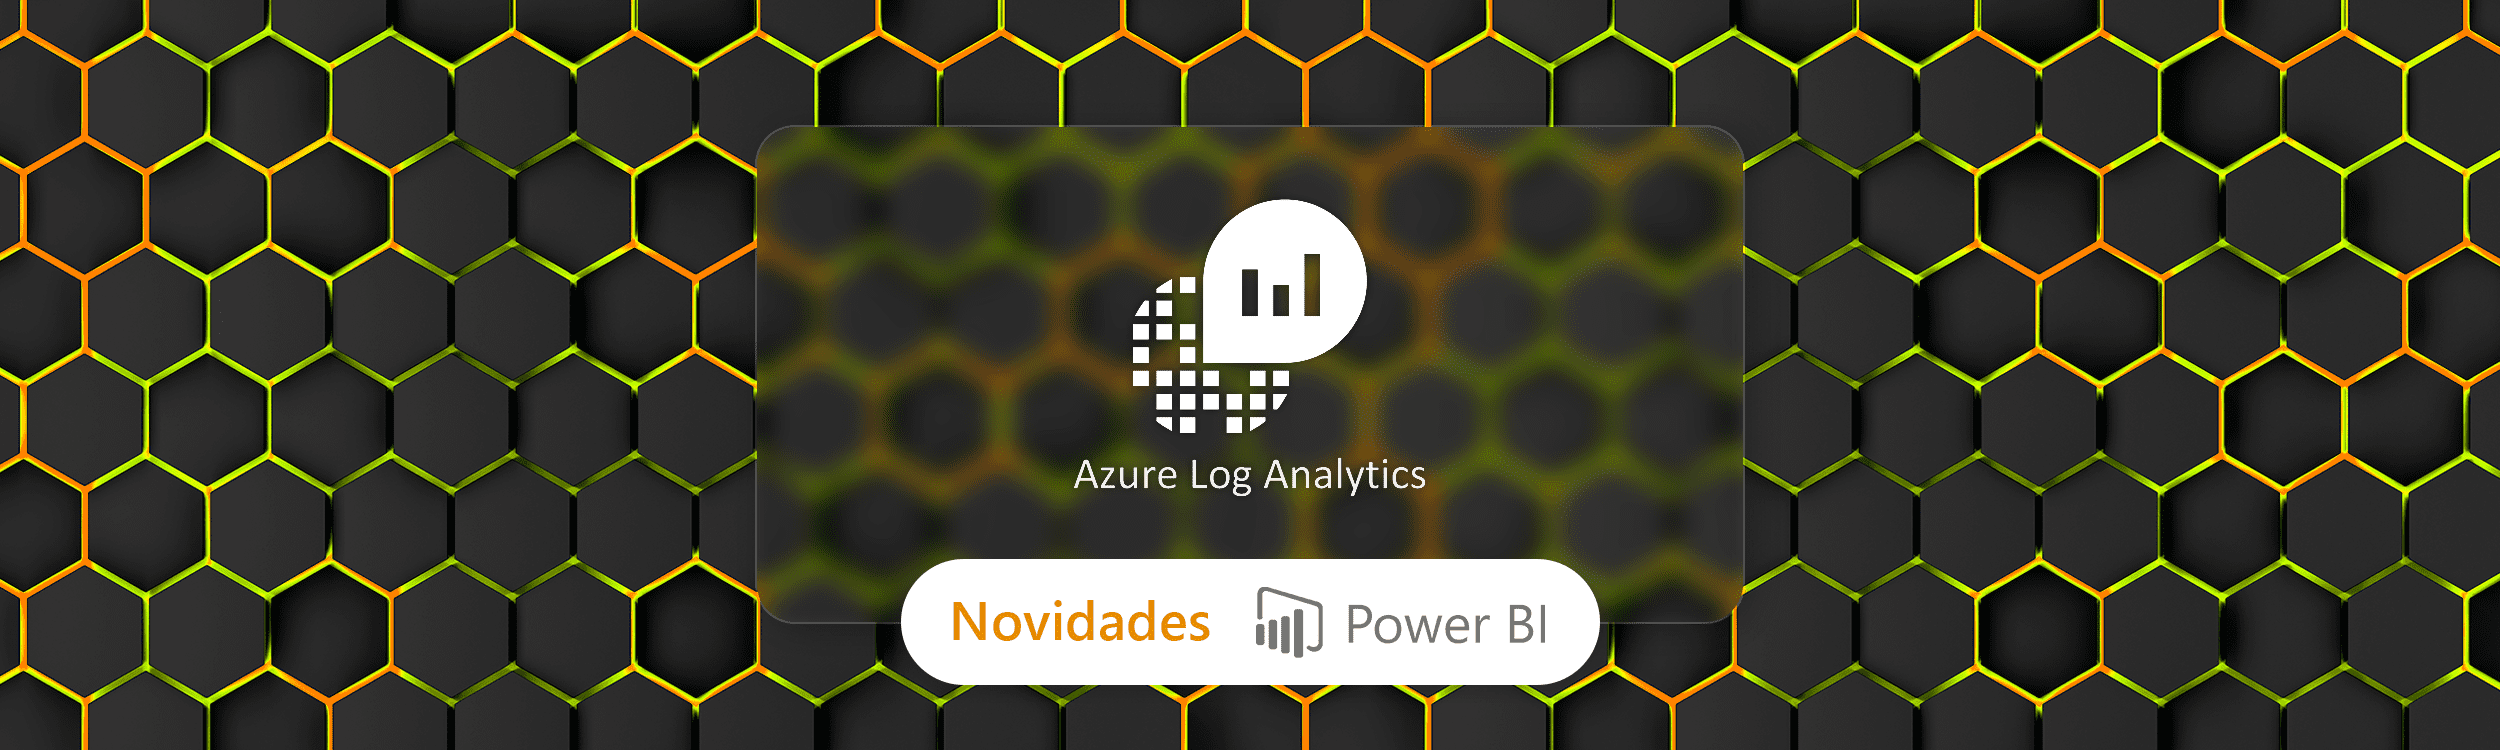 Power BI recebe suporte para integrar com o Azure Log Analytics